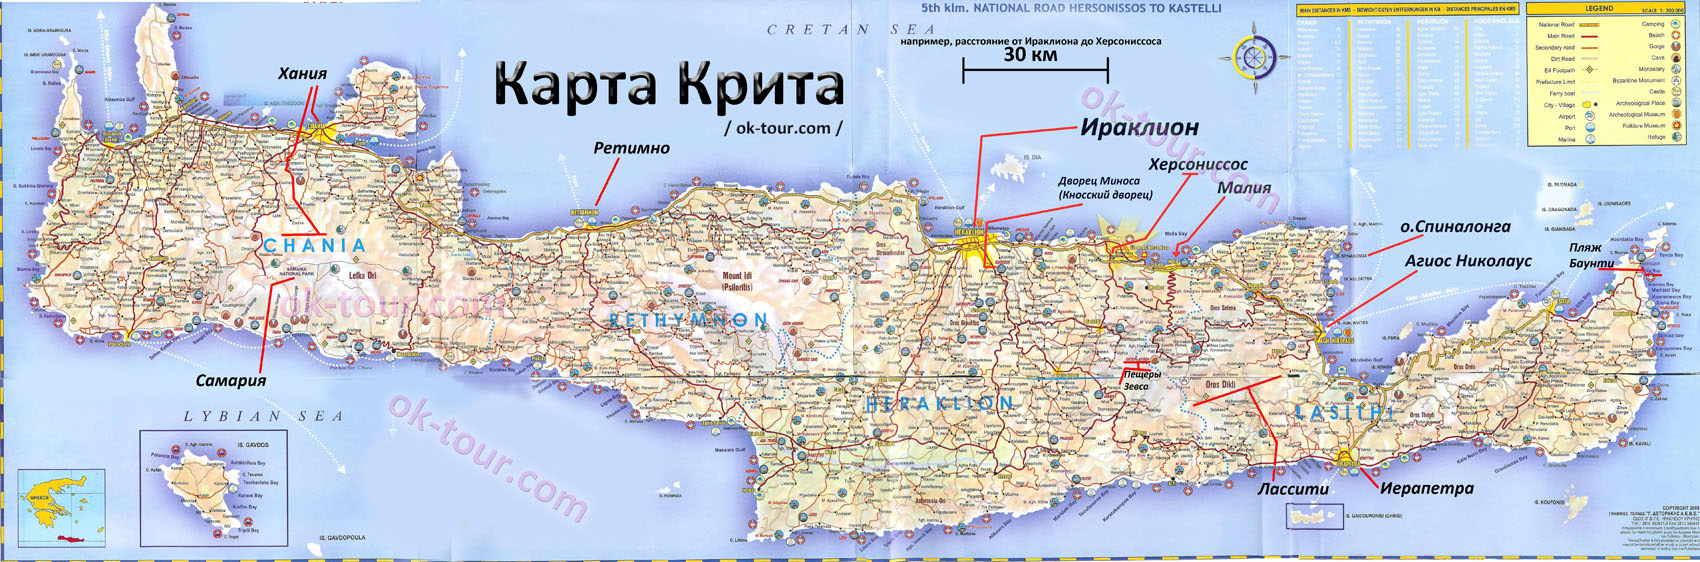 Пляжи крита: фото, обзор и путеводитель